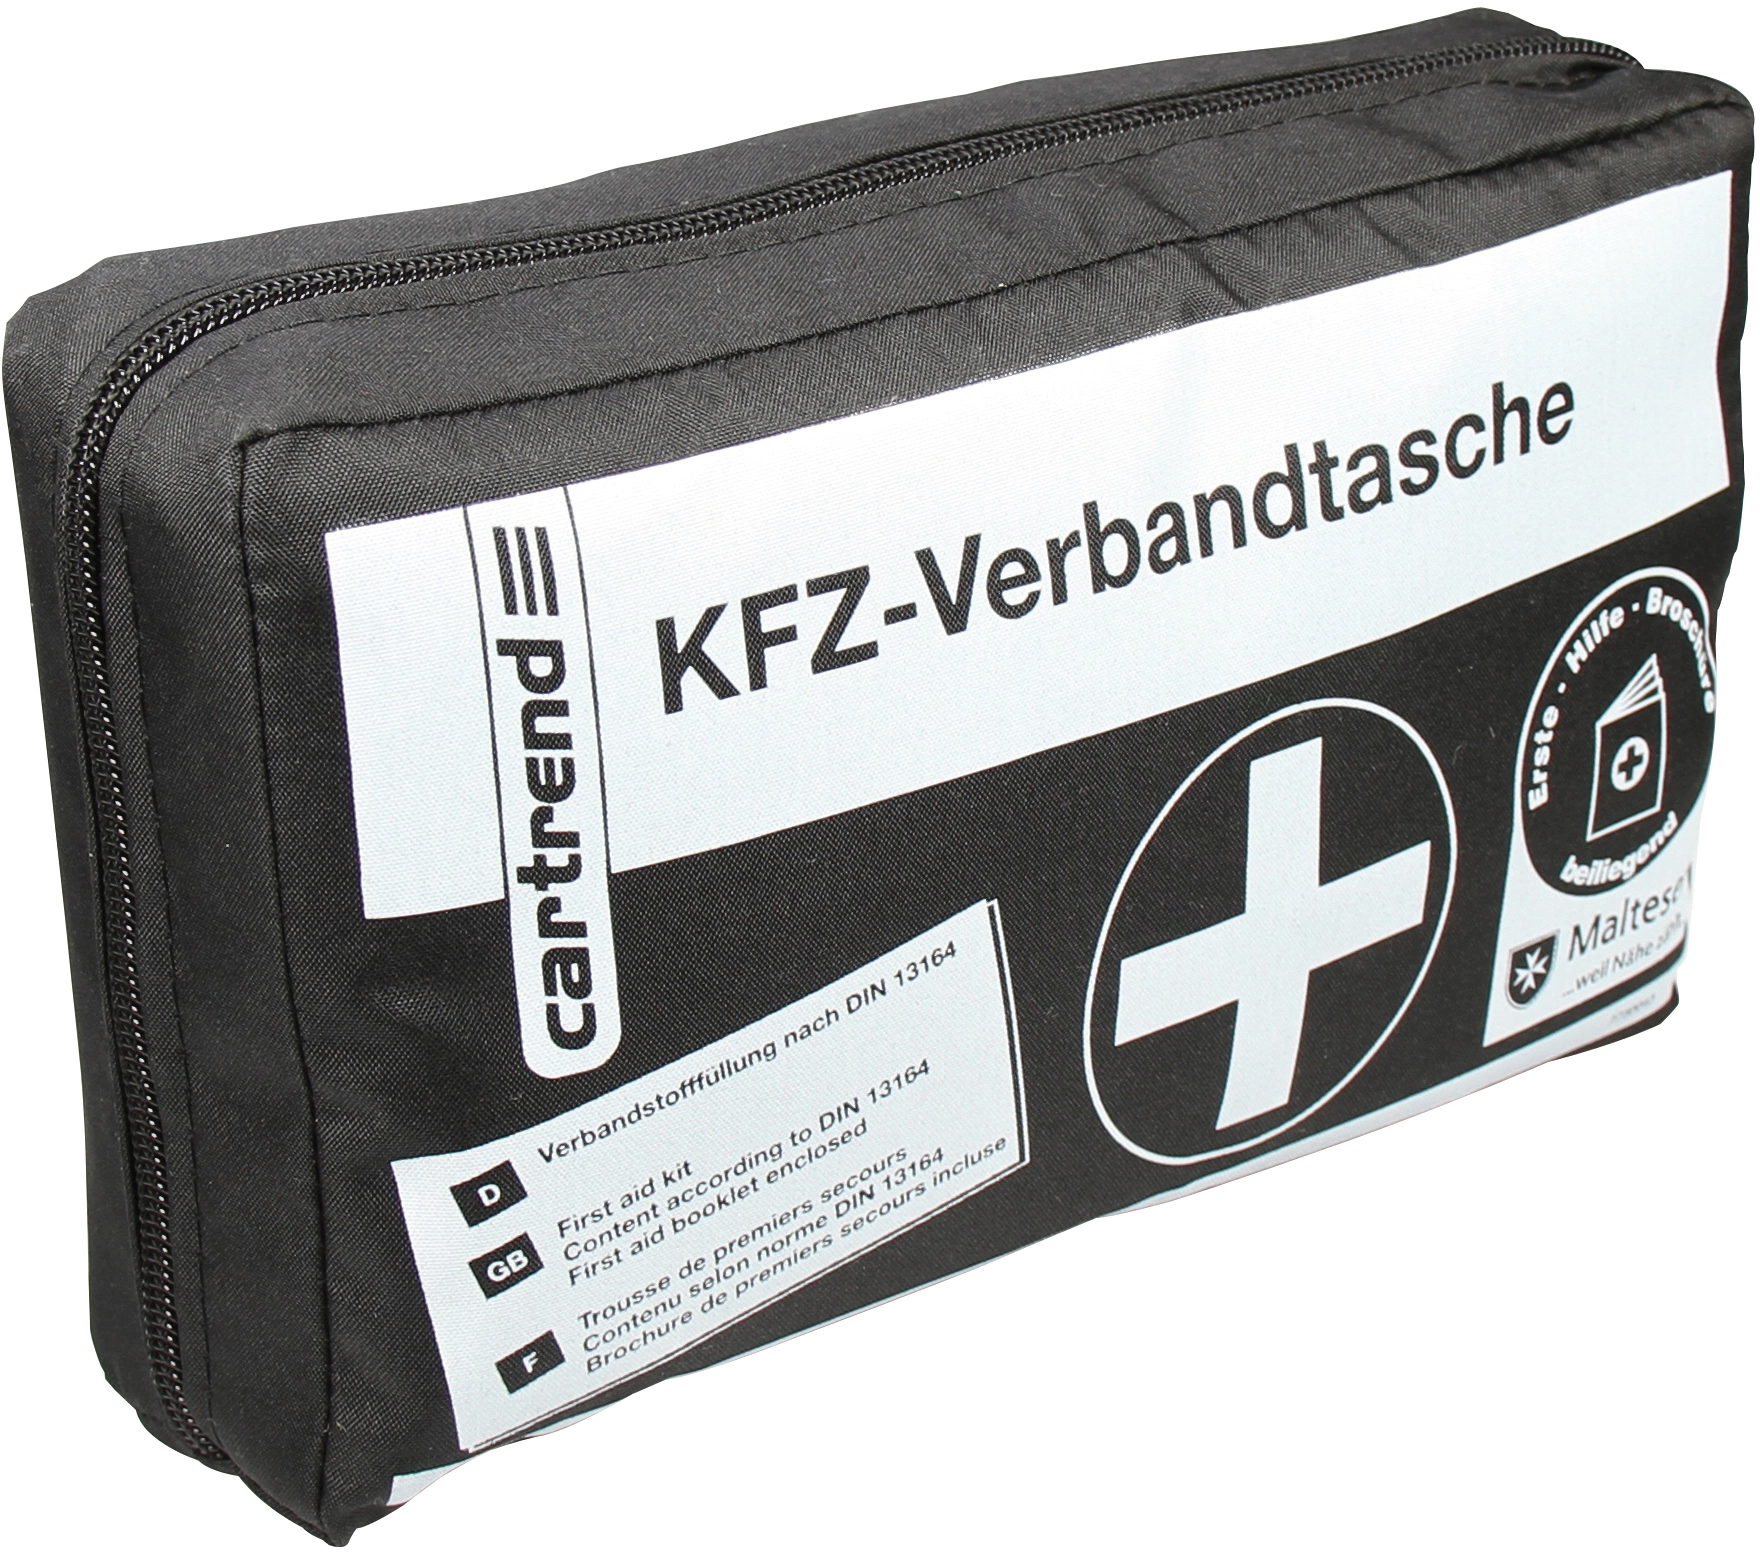 Cartrend Kfz-Verbandtasche Schwarz DIN 13164 kaufen bei OBI